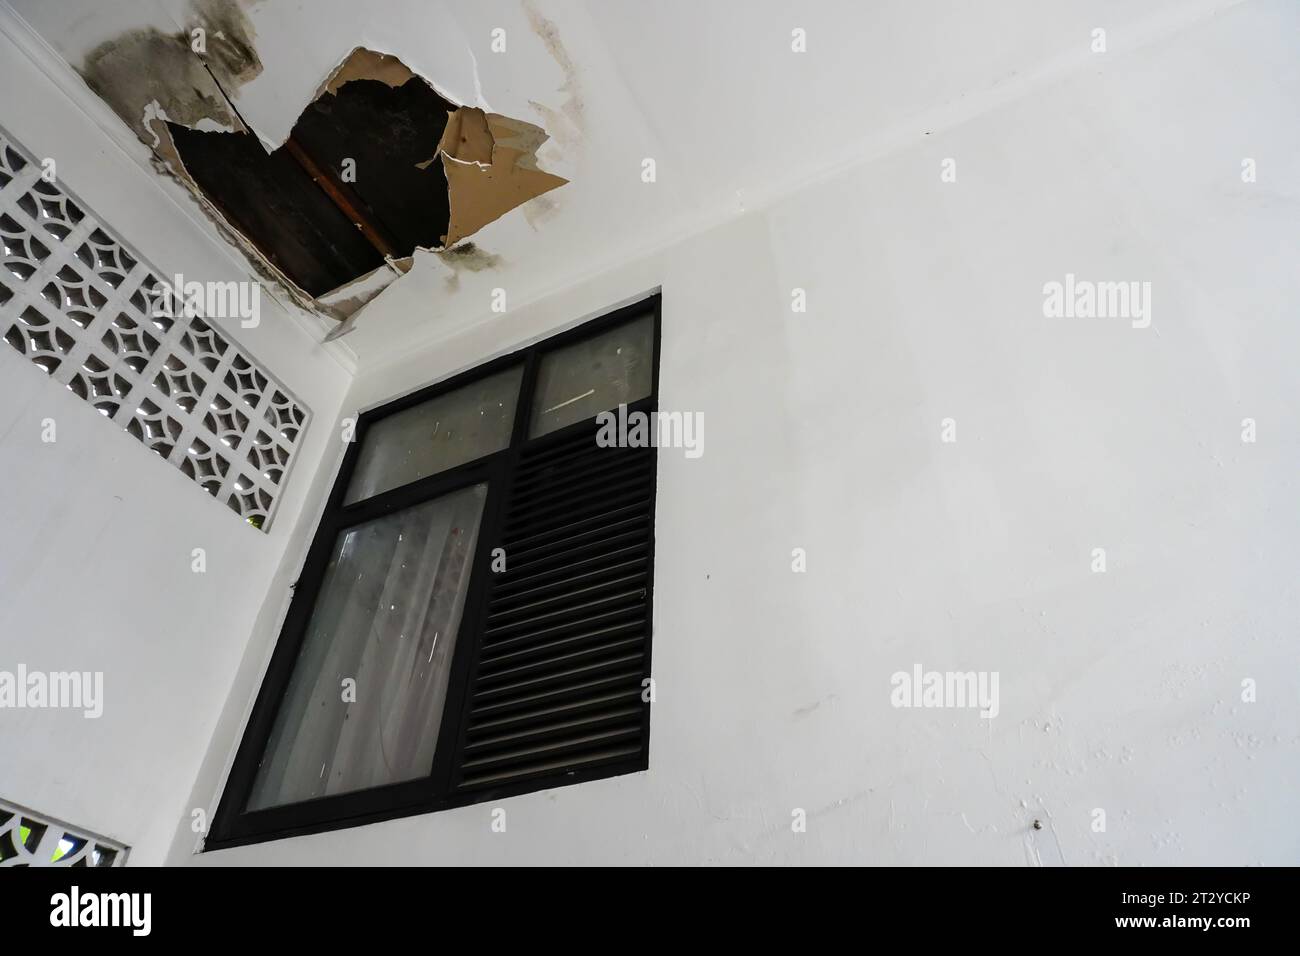 Plafond blanc endommagé causé par l'infiltration d'eau de pluie près de la fenêtre Banque D'Images